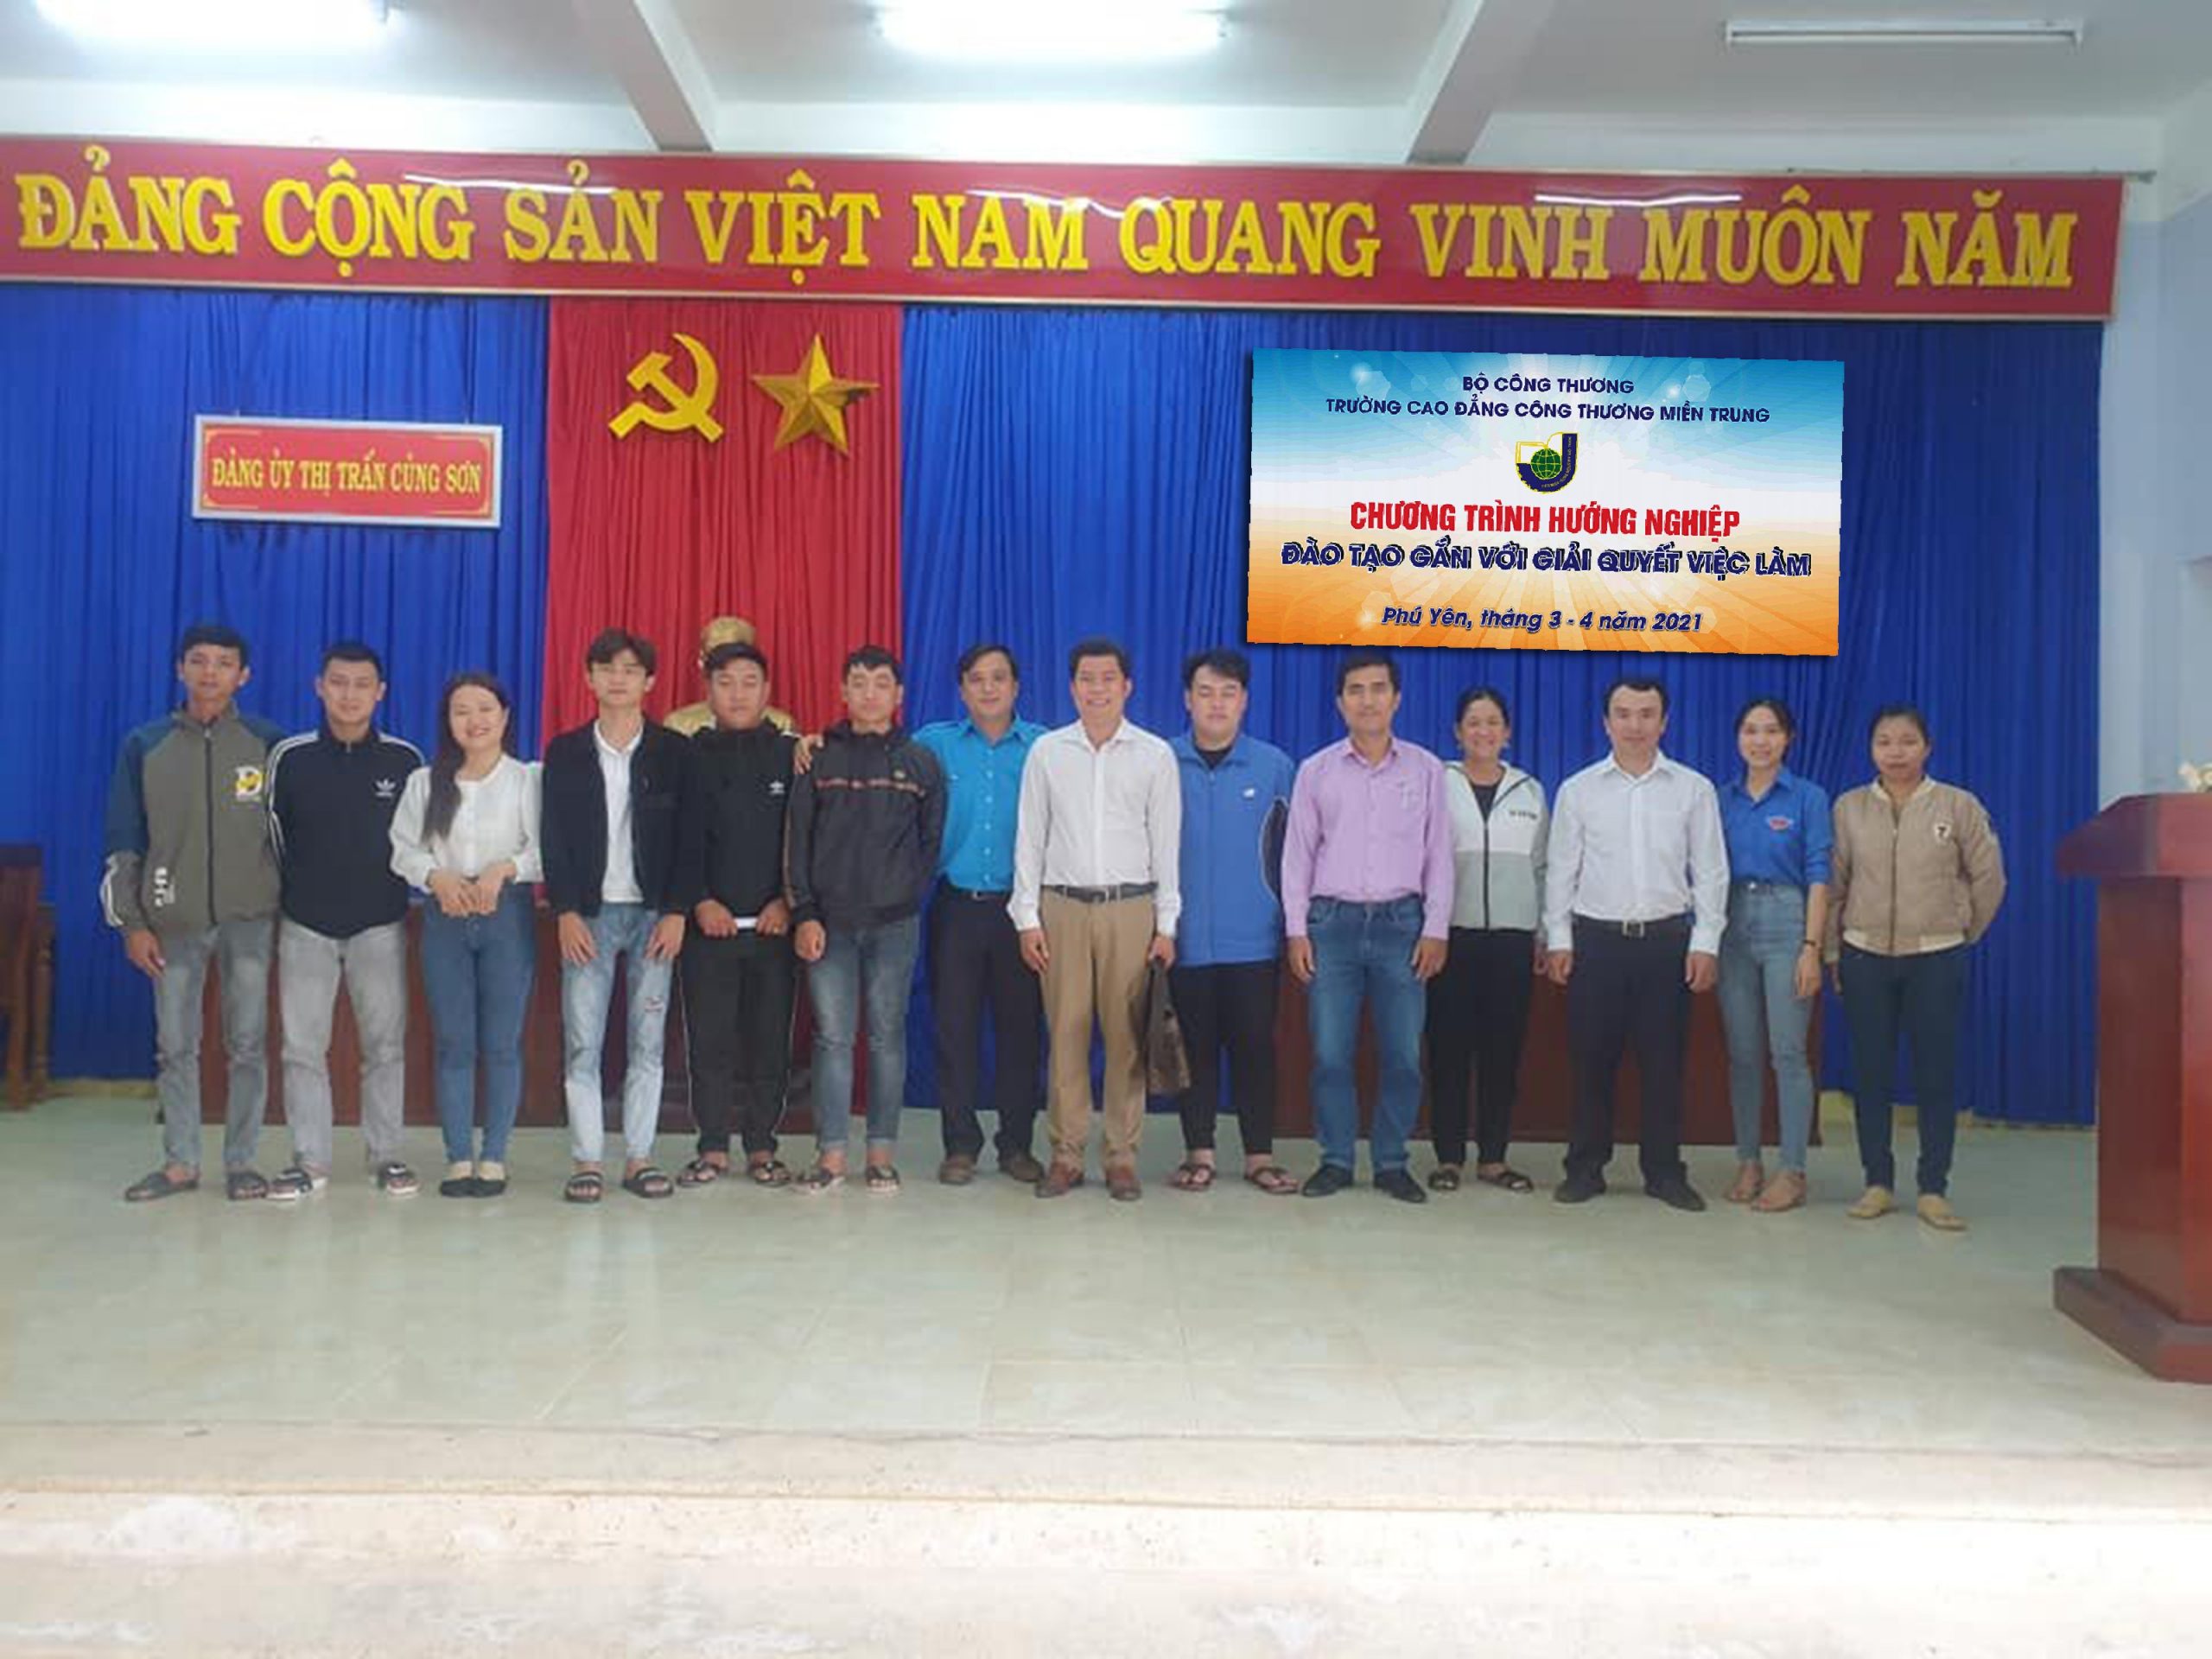 tư vấn hướng nghiệp đào tạo gắn với giải quyết việc làm cho thanh niên Huyện Sơn Hòa